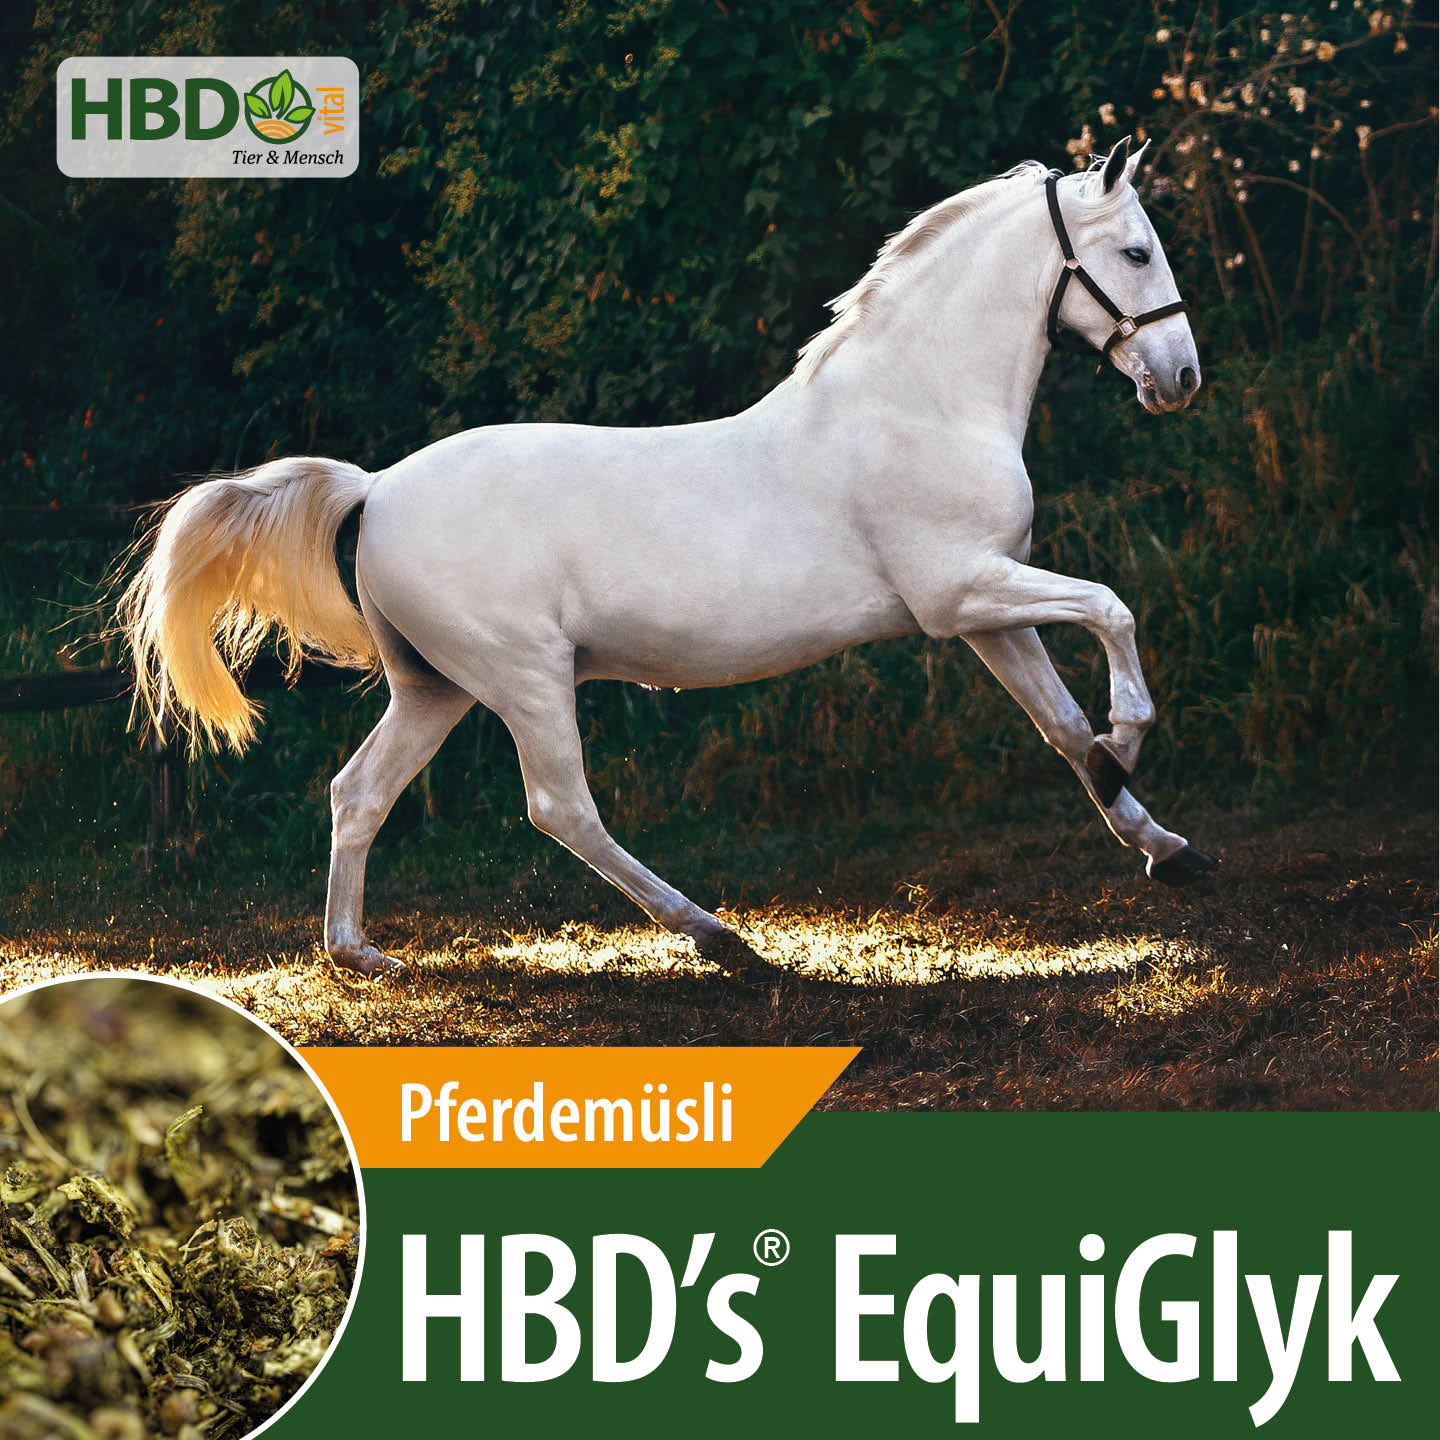 Shopbild für HBD’s EquiGlyk Pferdemüsli und Strukturfutter - Das Bild zeigt den Produktnamen sowie den Hinweis, dass es sich um ein Pferdemüsli handelt. Ein weißes Pferd ist zu sehen, das leicht steigt.